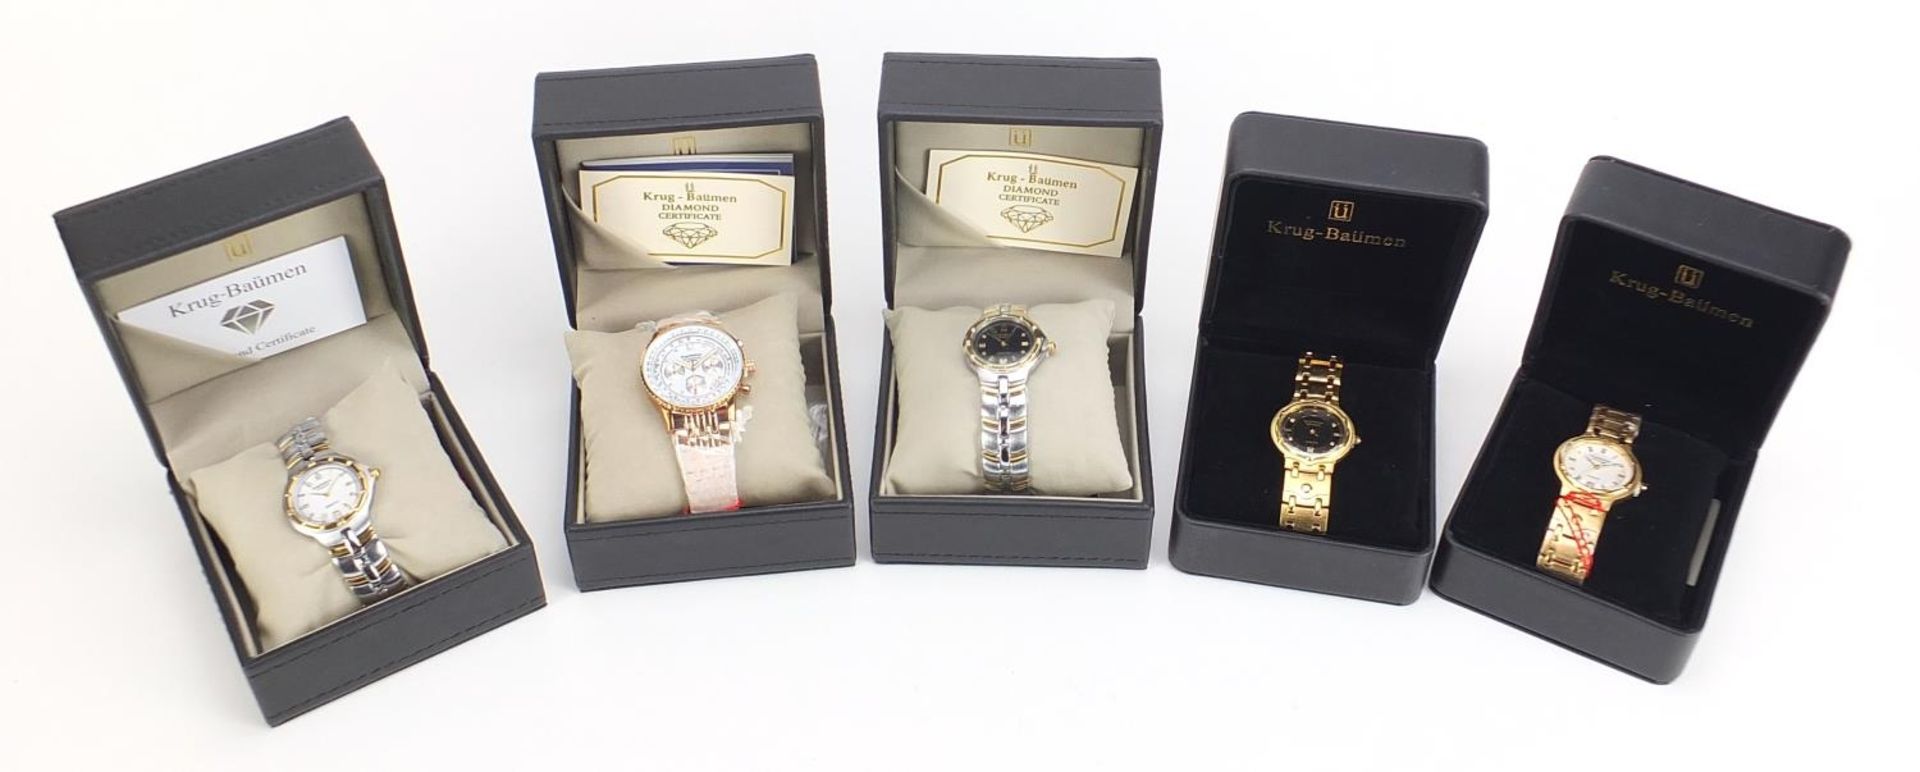 Five gentlemen's & Krug-Baumen diamond wristwatches with boxes comprising Air Traveller Diamond - Bild 6 aus 7